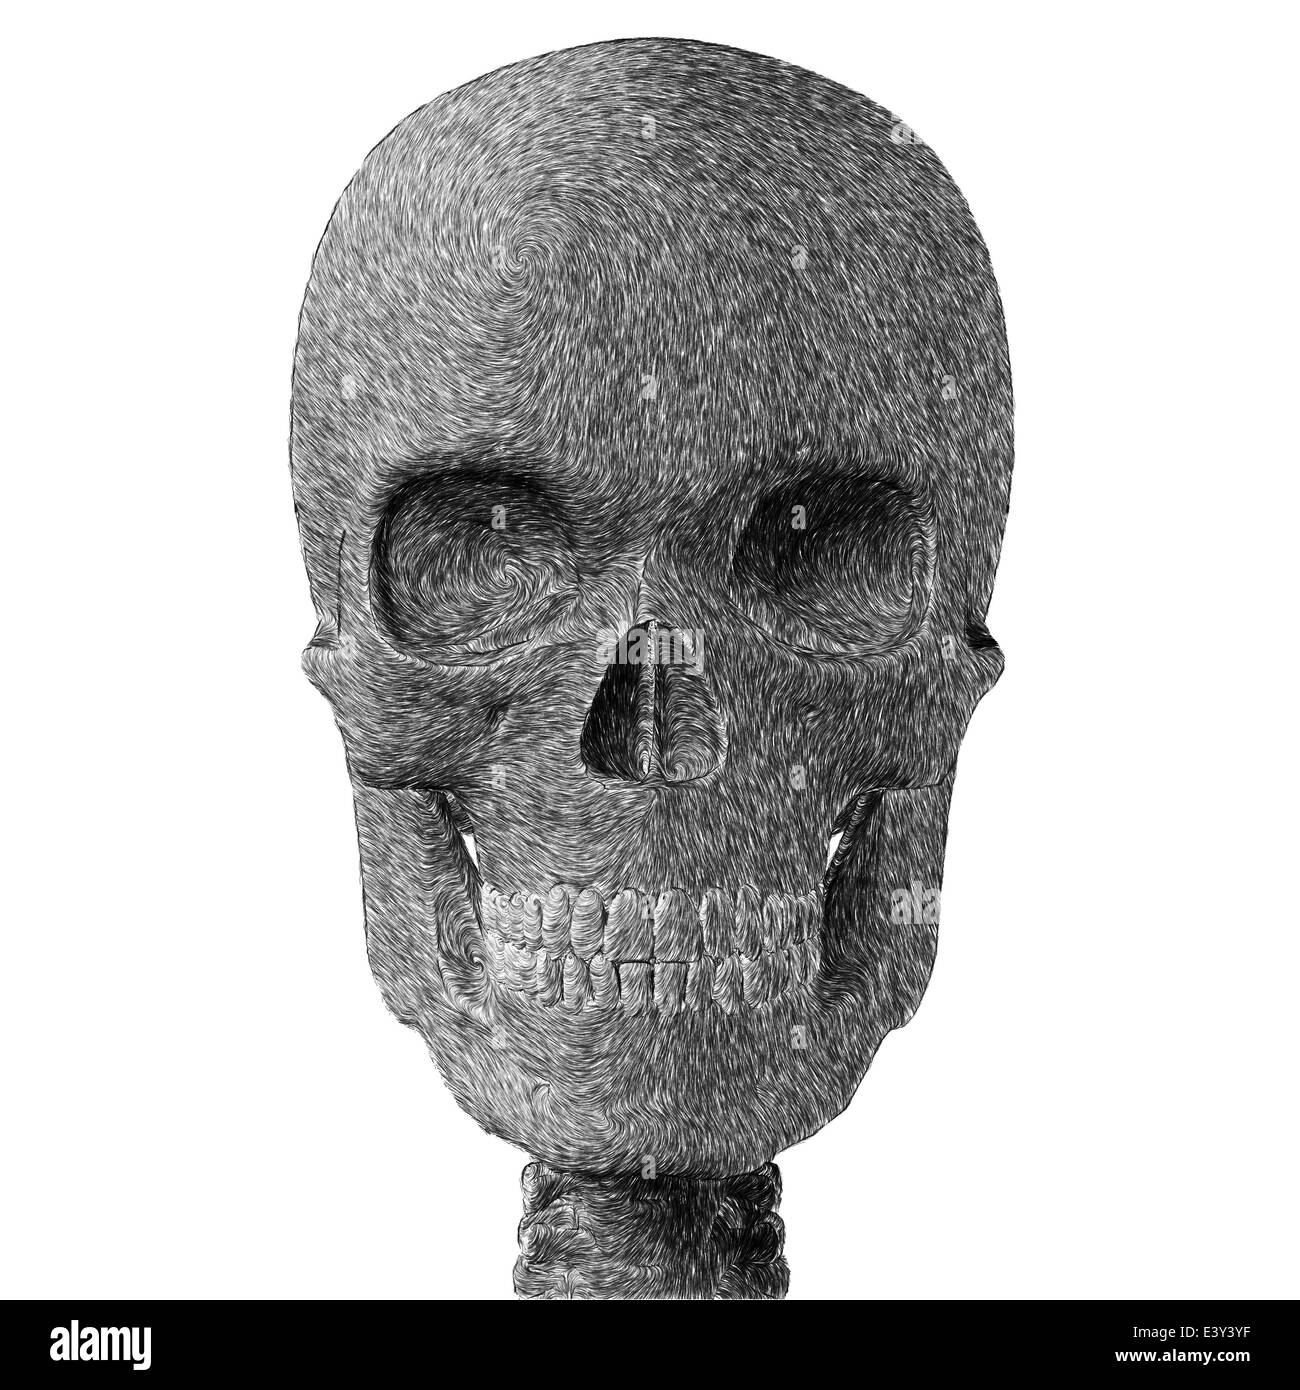 Cranio umano abstract schizzo a matita. Illustrazione digitale su sfondo bianco. Foto Stock